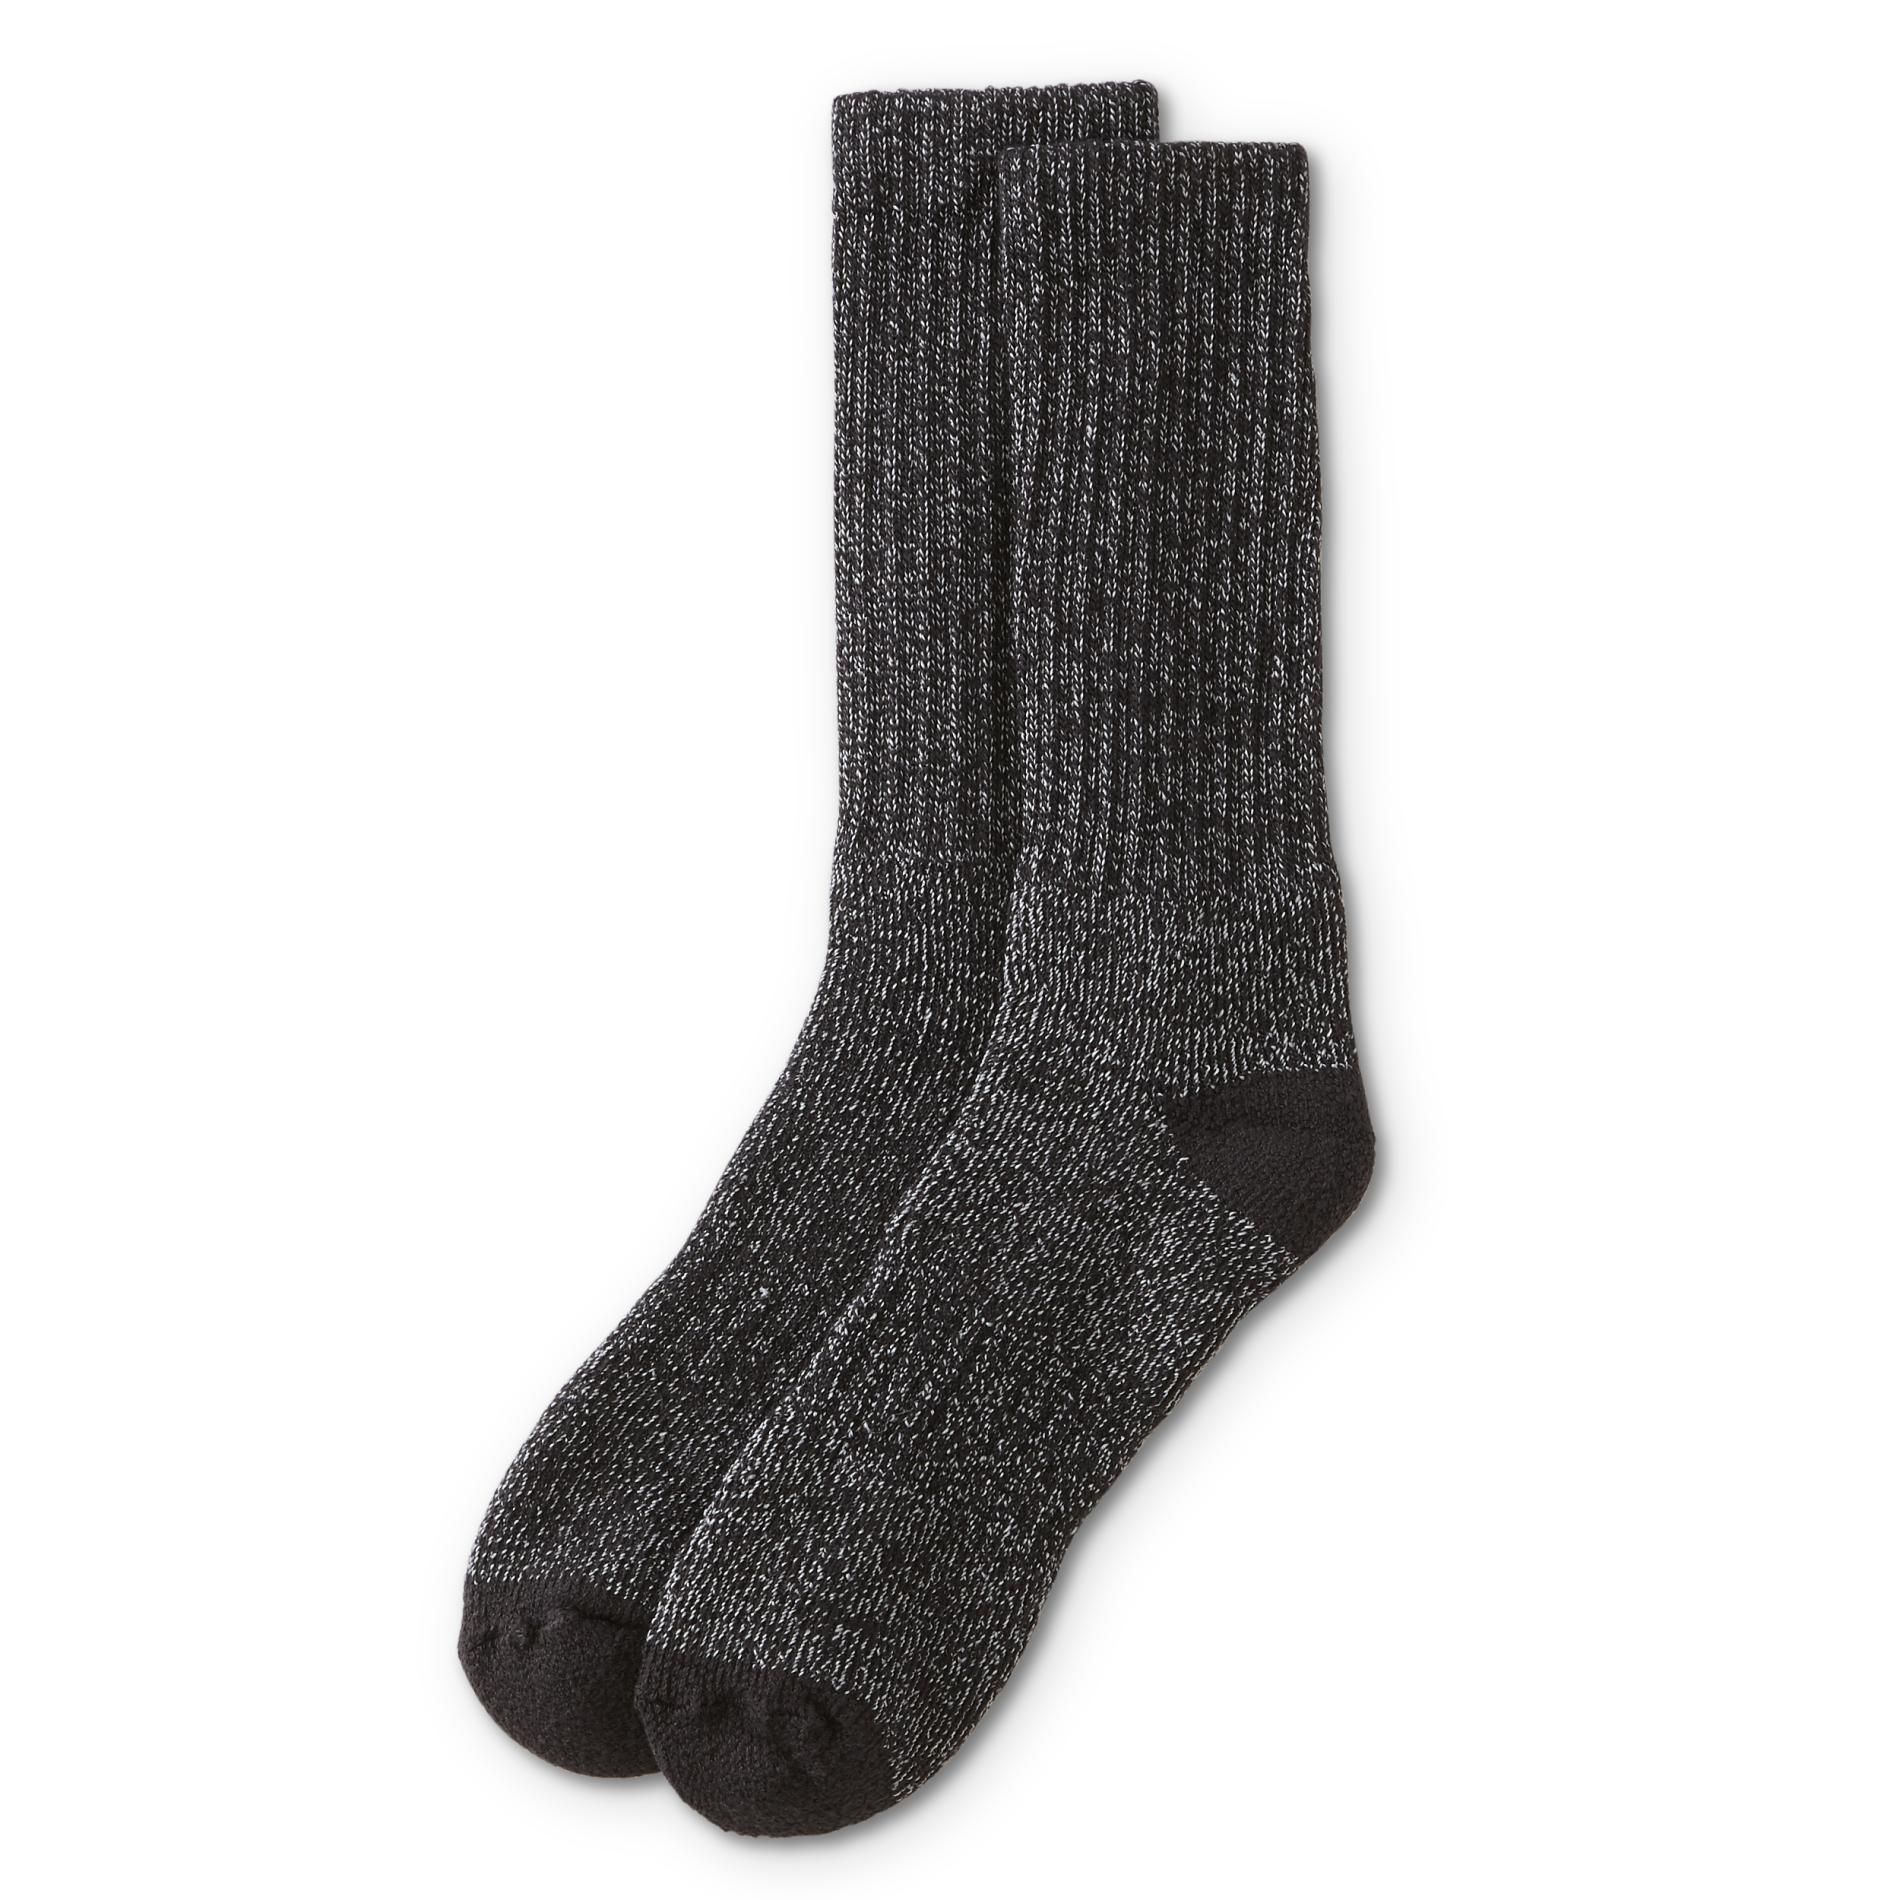 Craftsman Men's 2-Pairs Steel Toe Socks